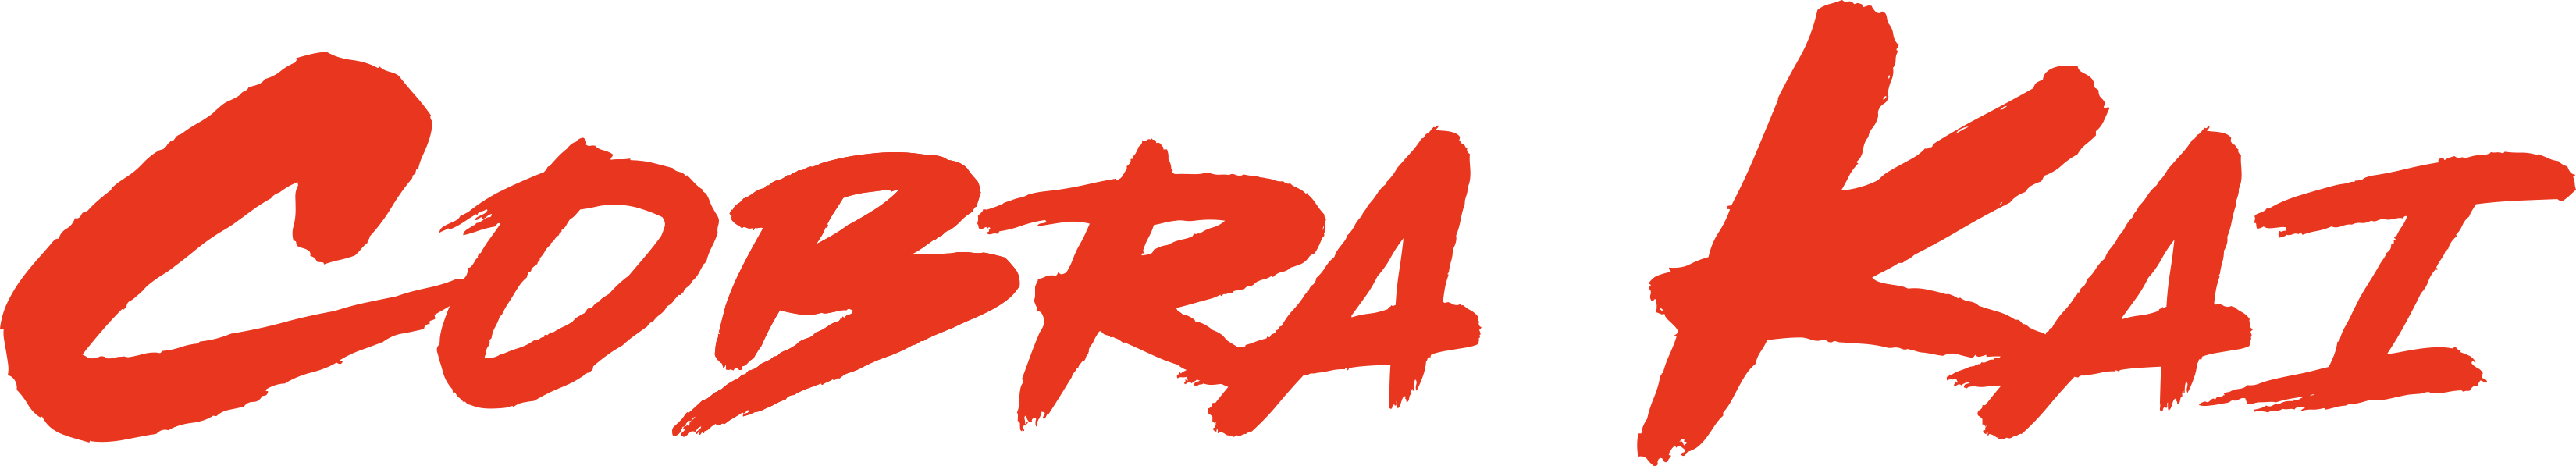 Cobra Kai logo PNG скачать бесплатно